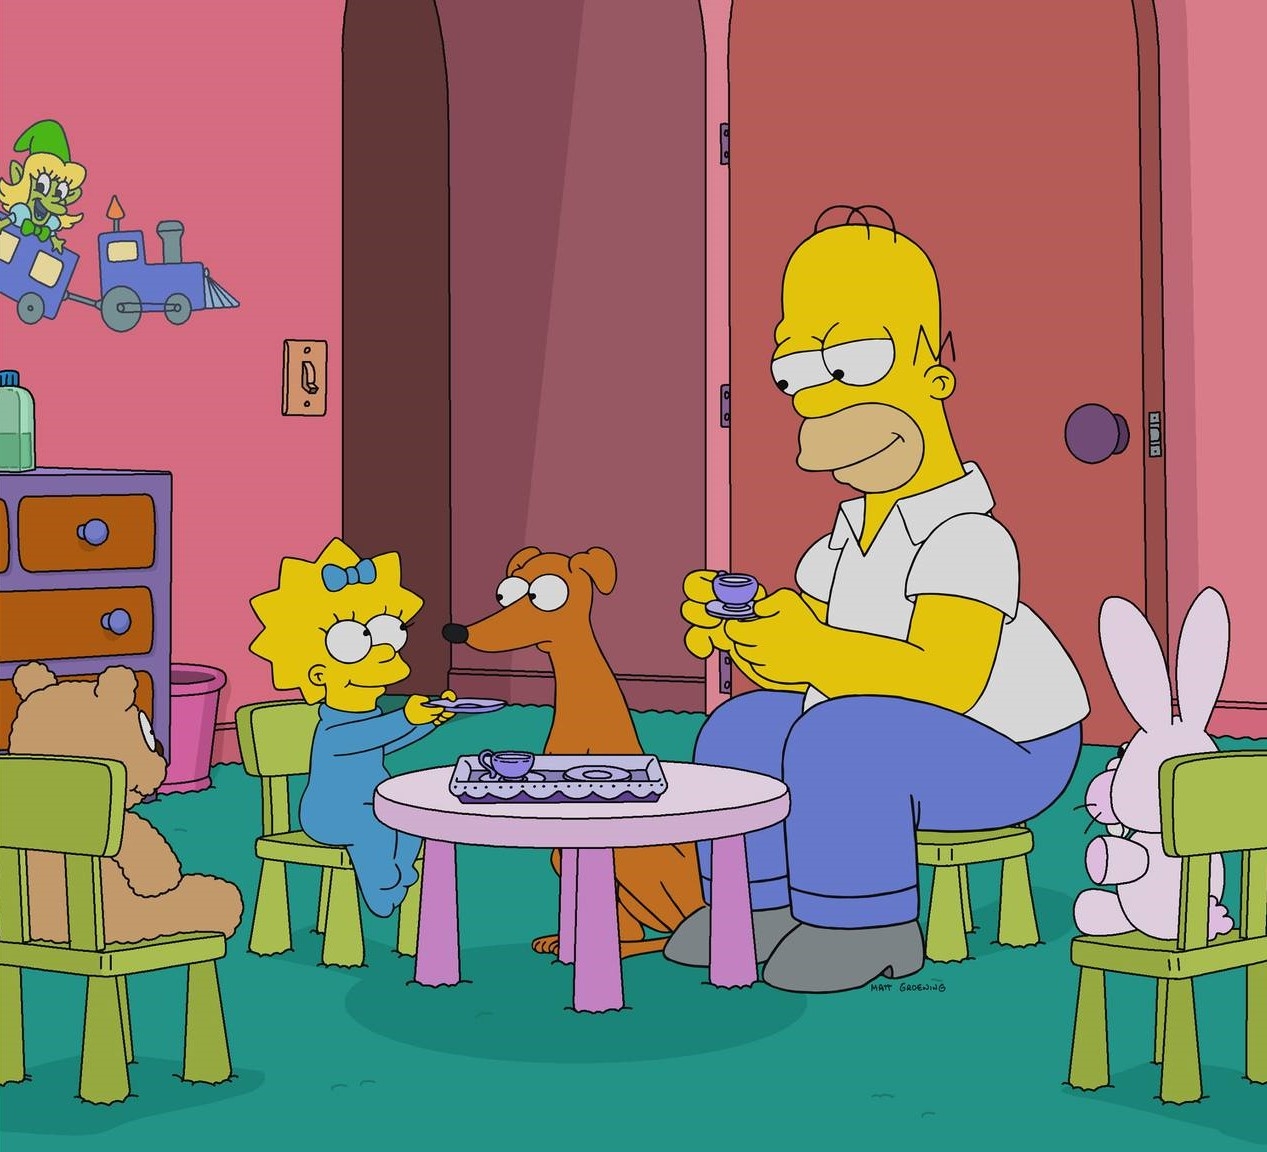 Fox бьет рекорды: культовый сериал "Симпсоны" продлили еще на два сезона - фото №2